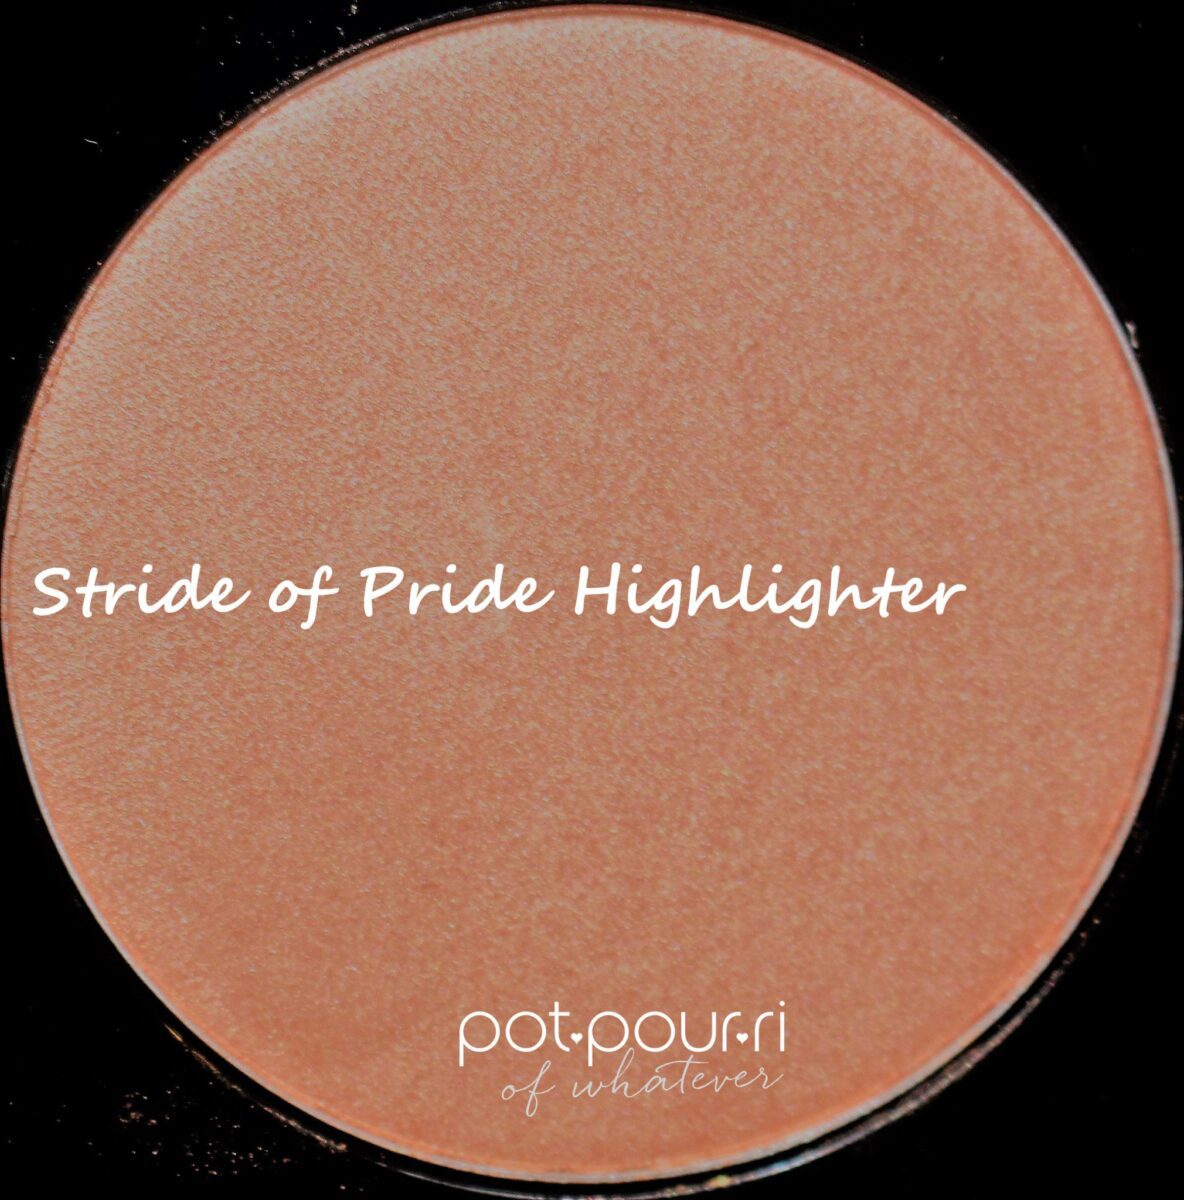 Mac-mischief-minx-Stride-of-Pride-highlighter